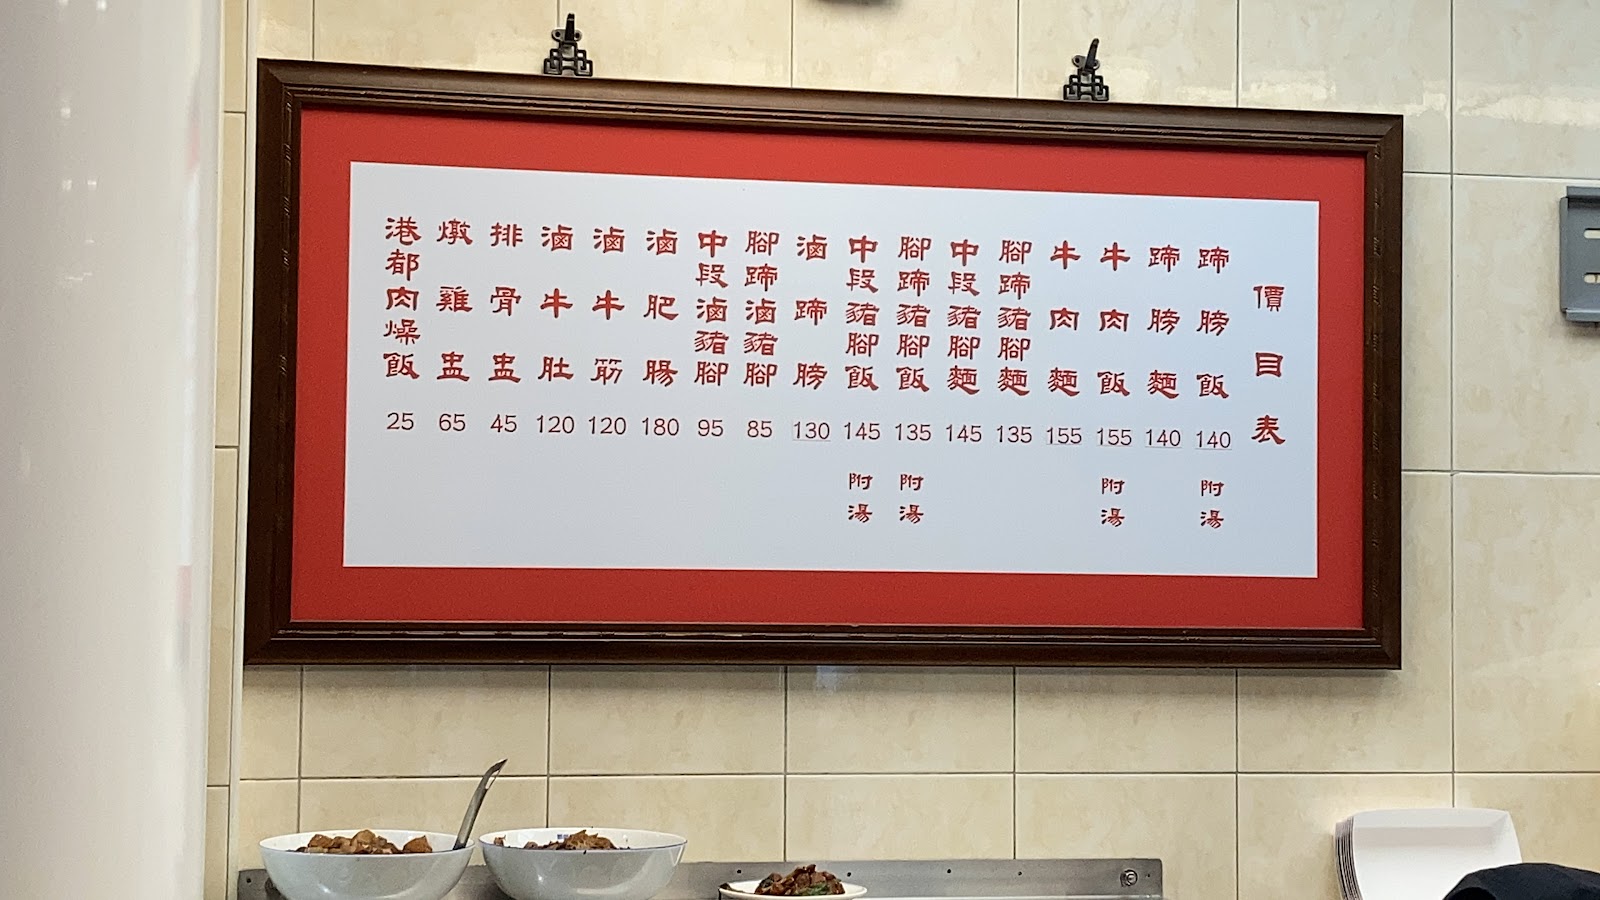 TAKAOJUJU BLOG: フランス風牛肉麺「鄧師傅功夫菜-中正總店 CHEF TENG」2022.10再訪問